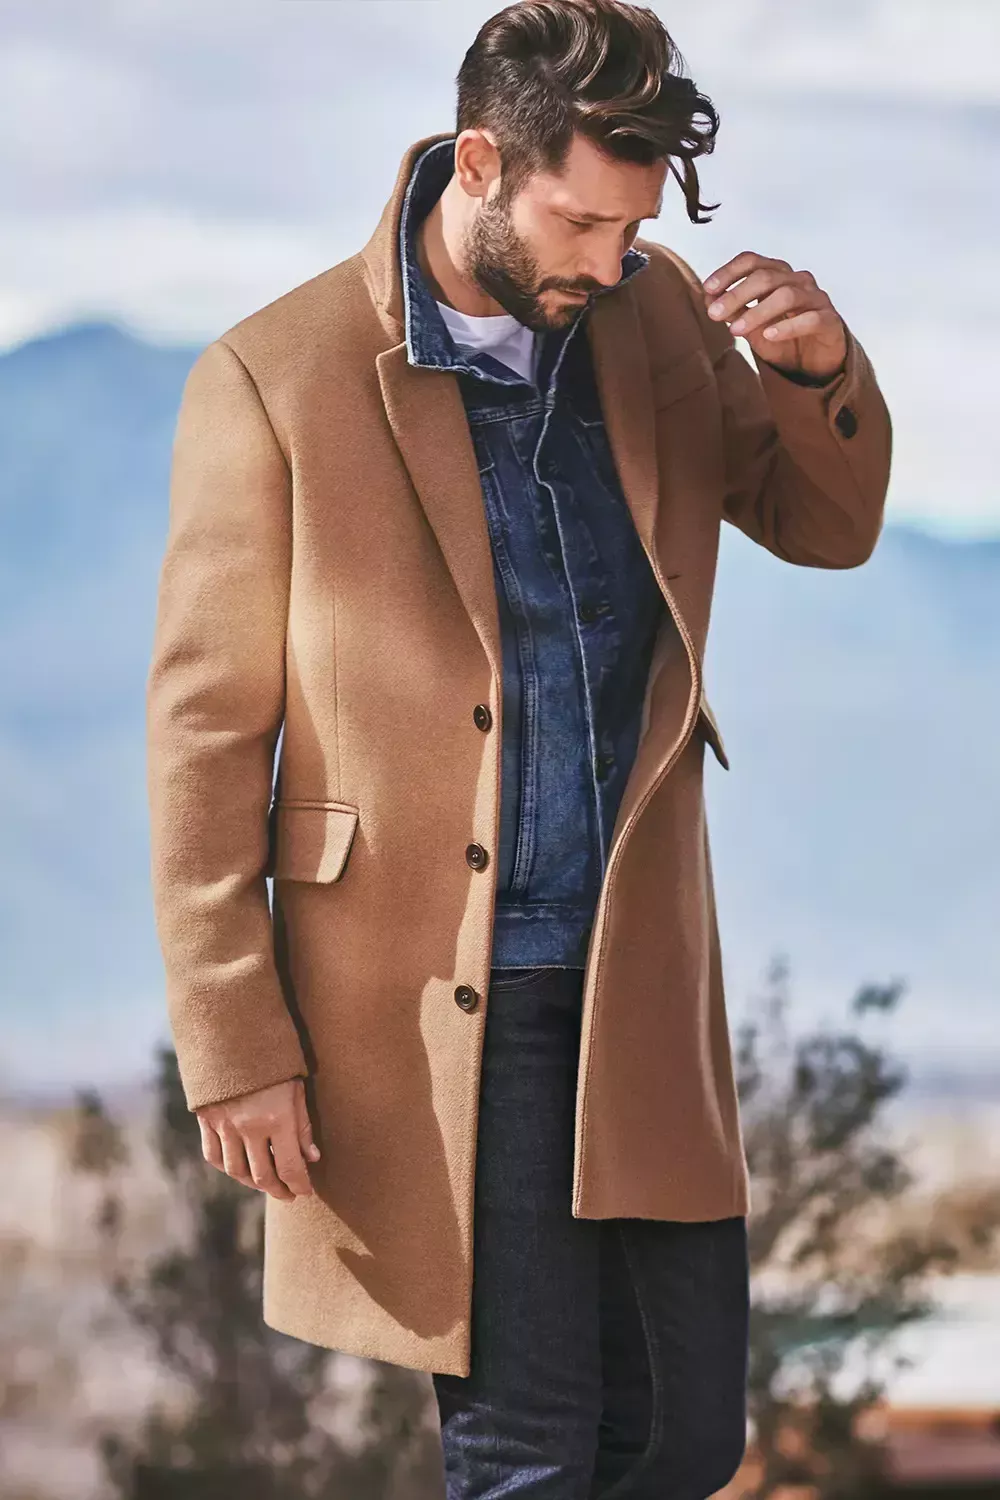 Conjuntos de chaqueta vaquera para hombre: 11 formas elegantes de llevarla